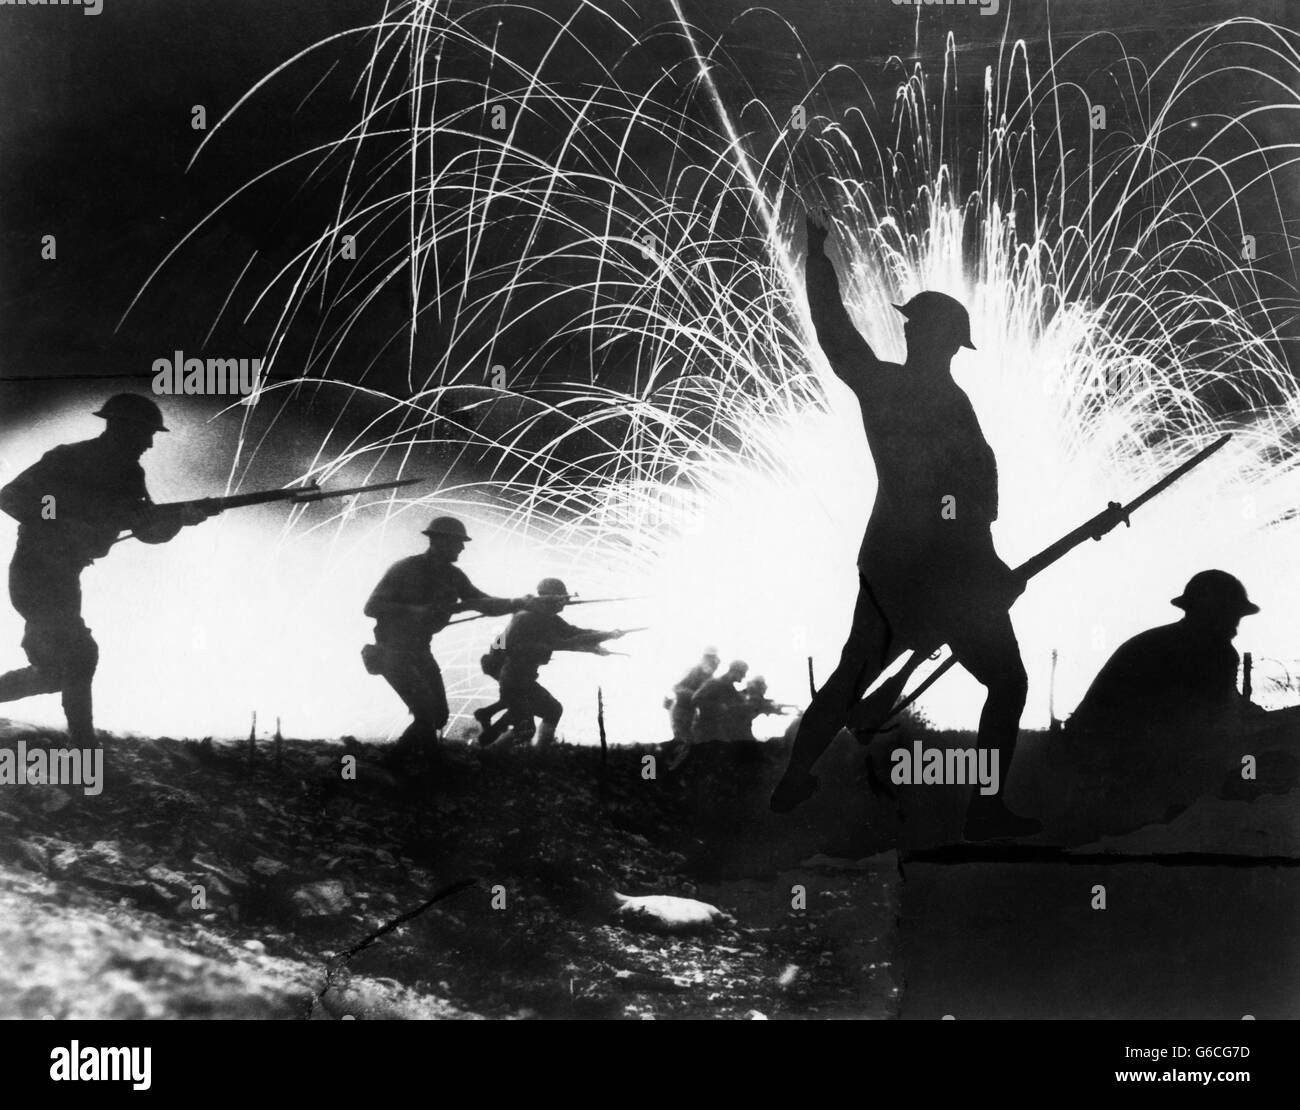 1910s 1918 anónimo de la I Guerra Mundial siluetas de soldados de la fuerza expedicionaria americana con bayonetas fija la carga en batalla nocturna Foto de stock